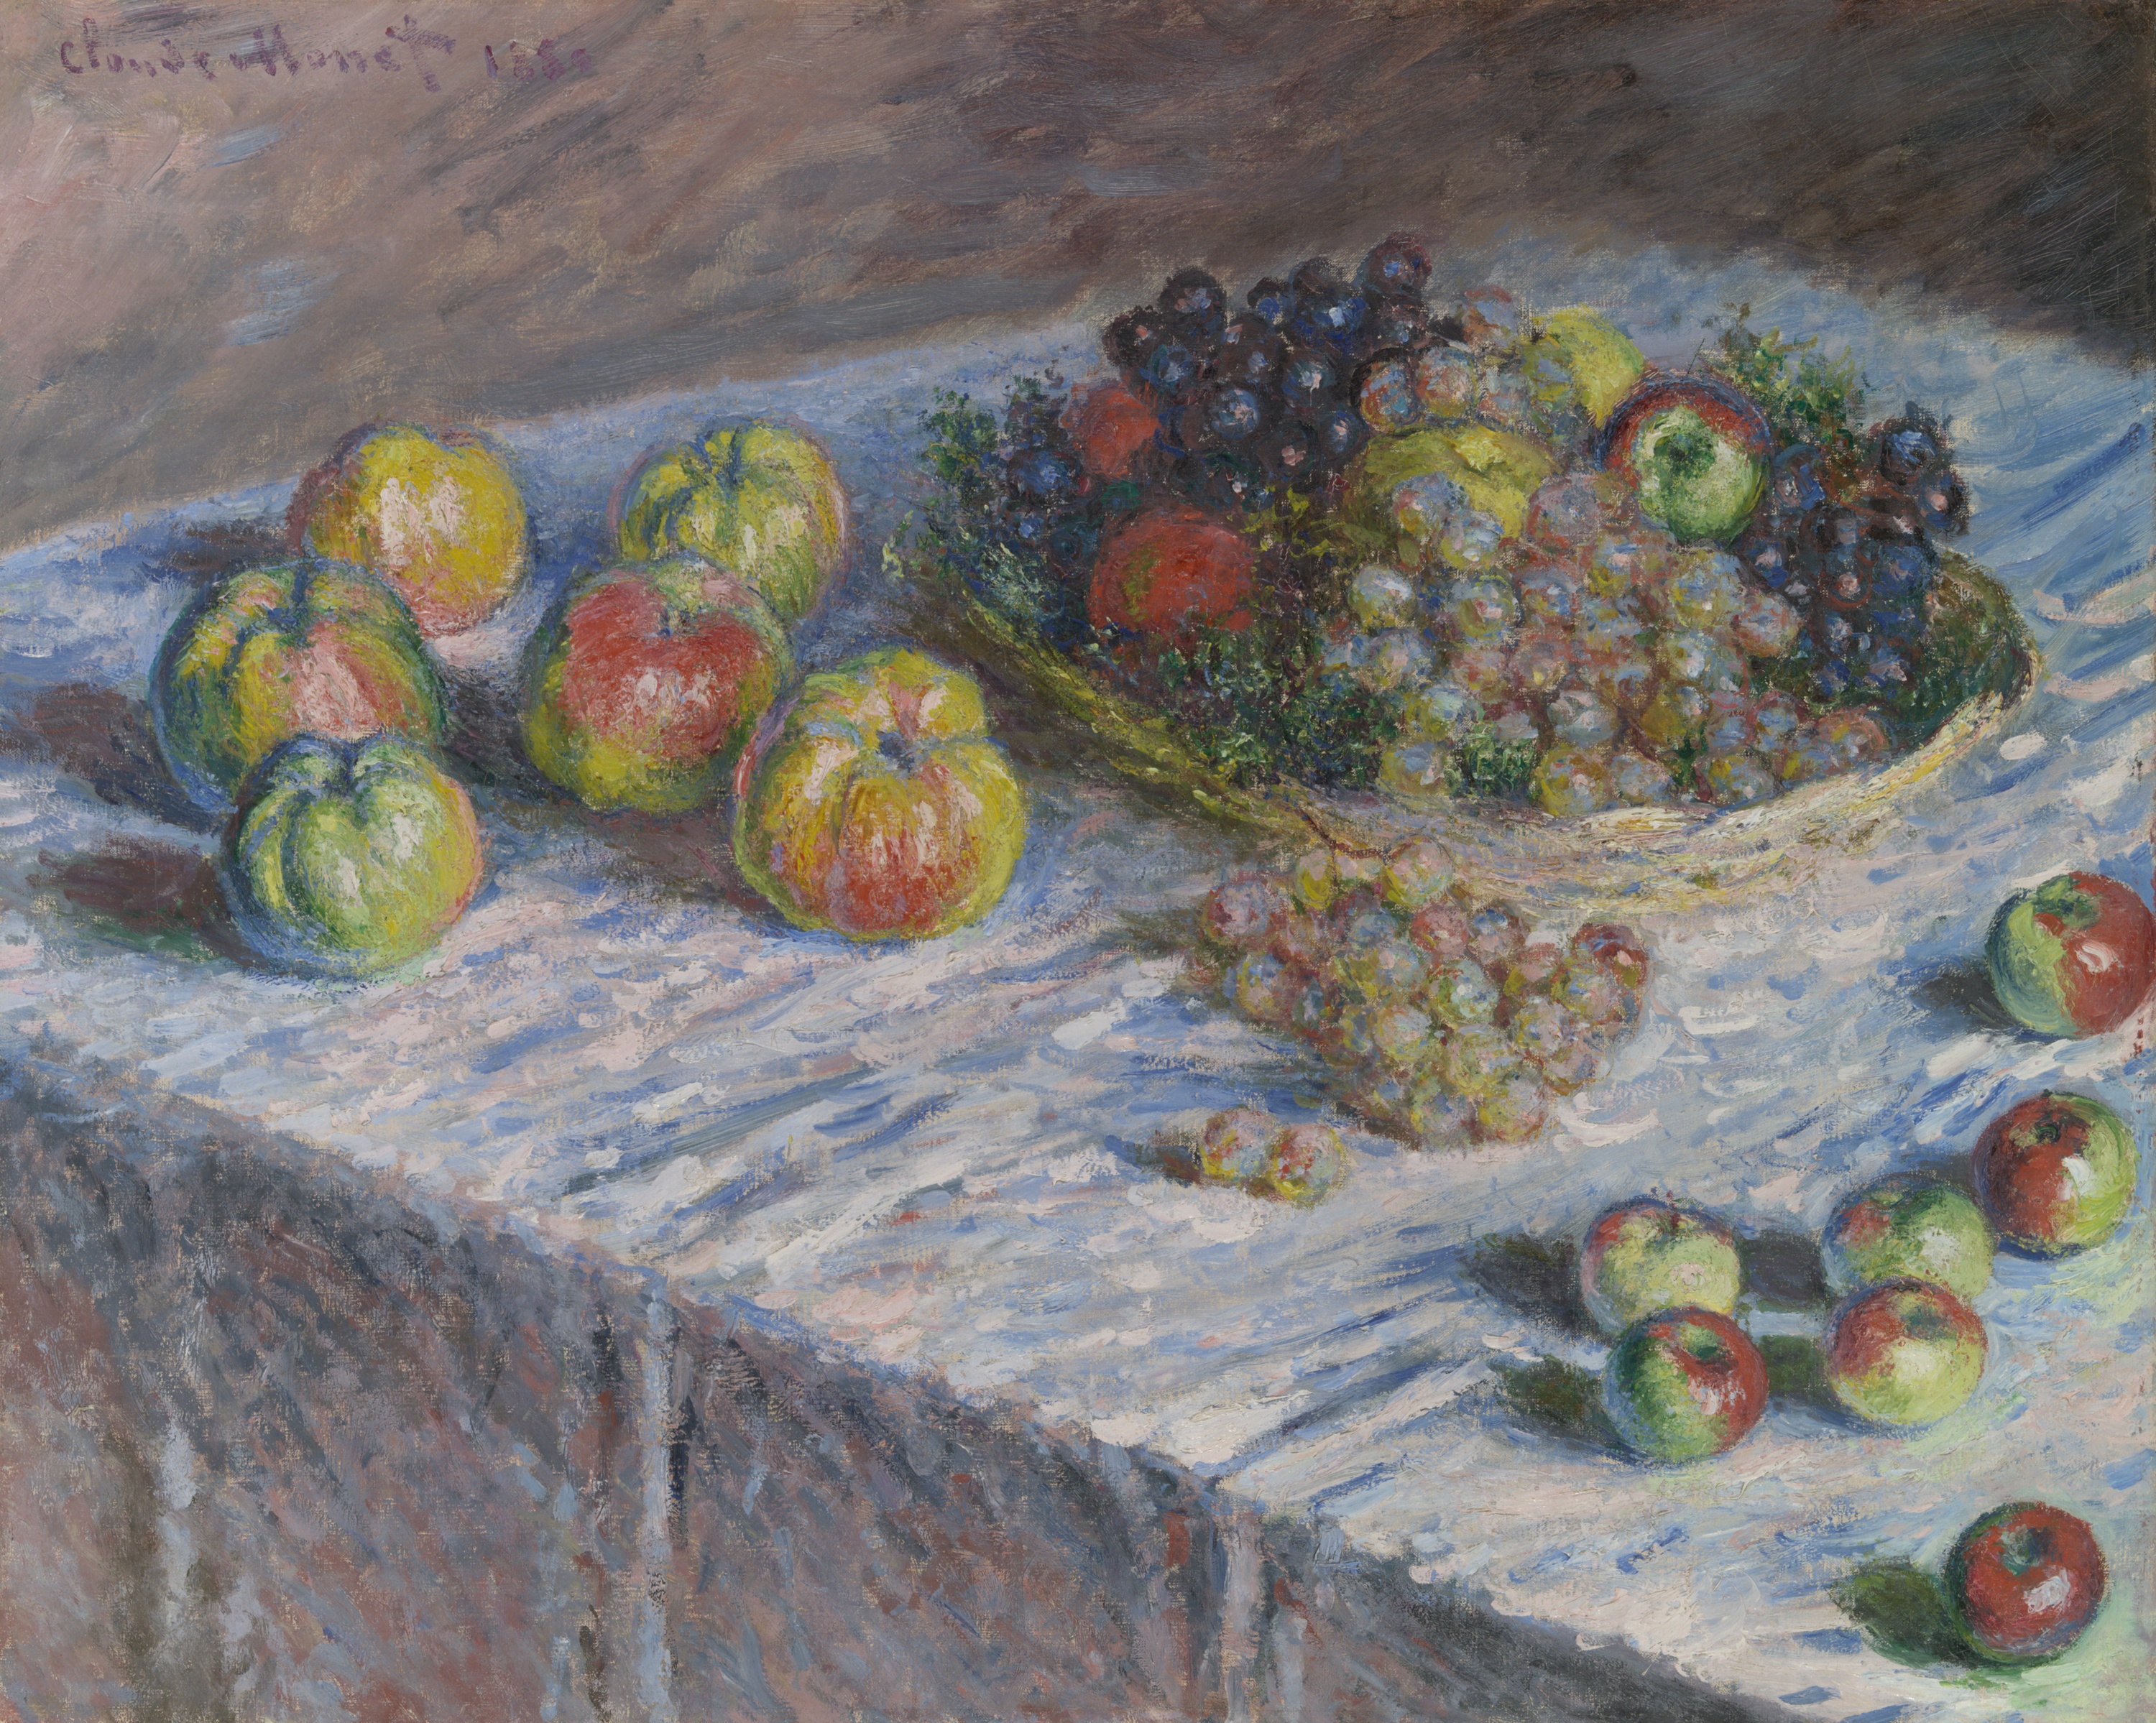 林檎と葡萄 by Claude Monet - 1880年 - 66.5 × 82.5 cm 